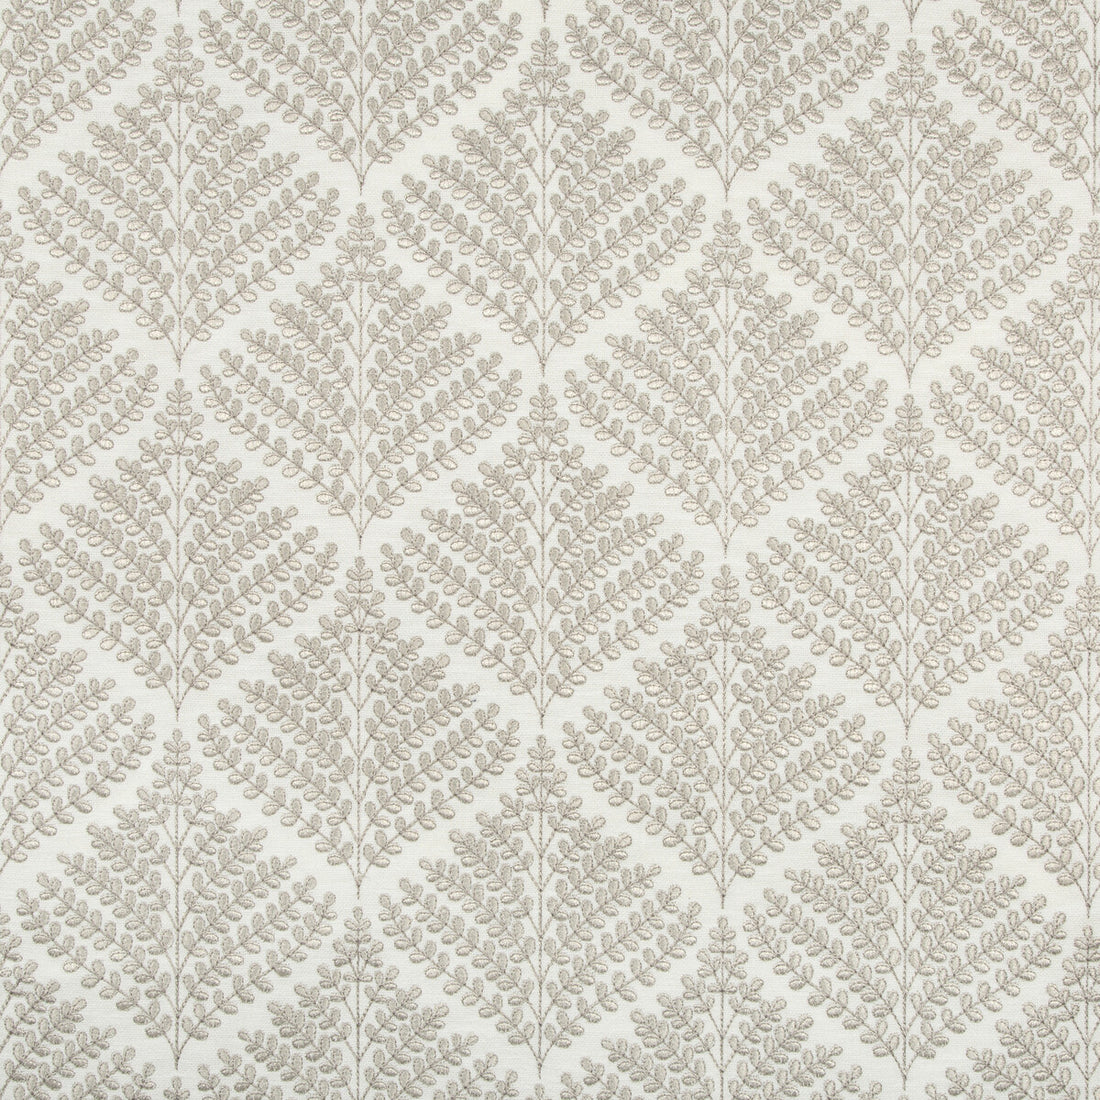 Kravet Basics fabric in 36143-116 color - pattern 36143.116.0 - by Kravet Basics